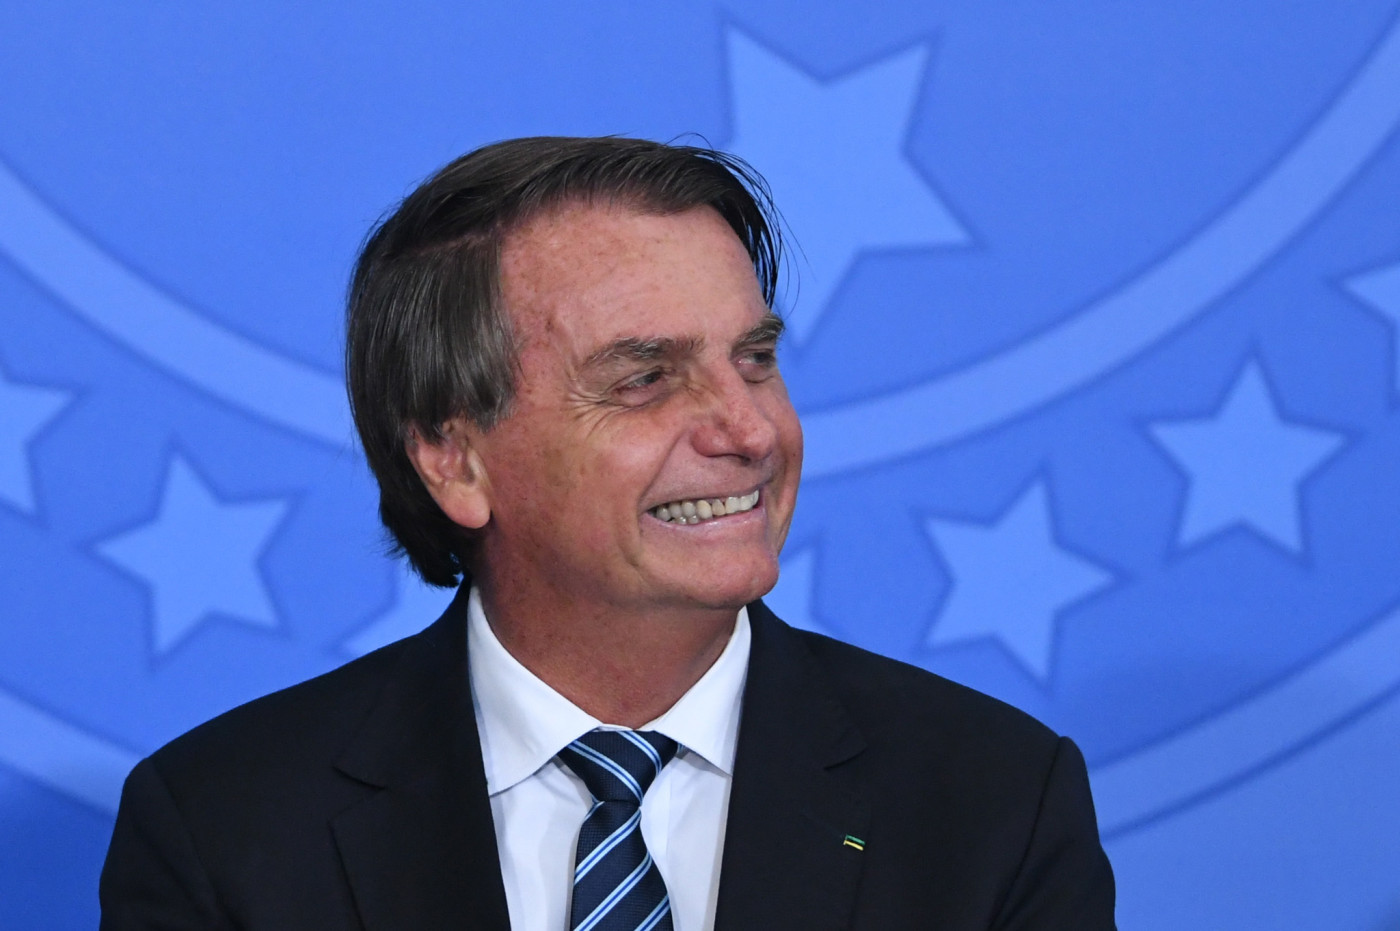 O presidente Jair Bolsonaro olhando para o lado e sorrindo